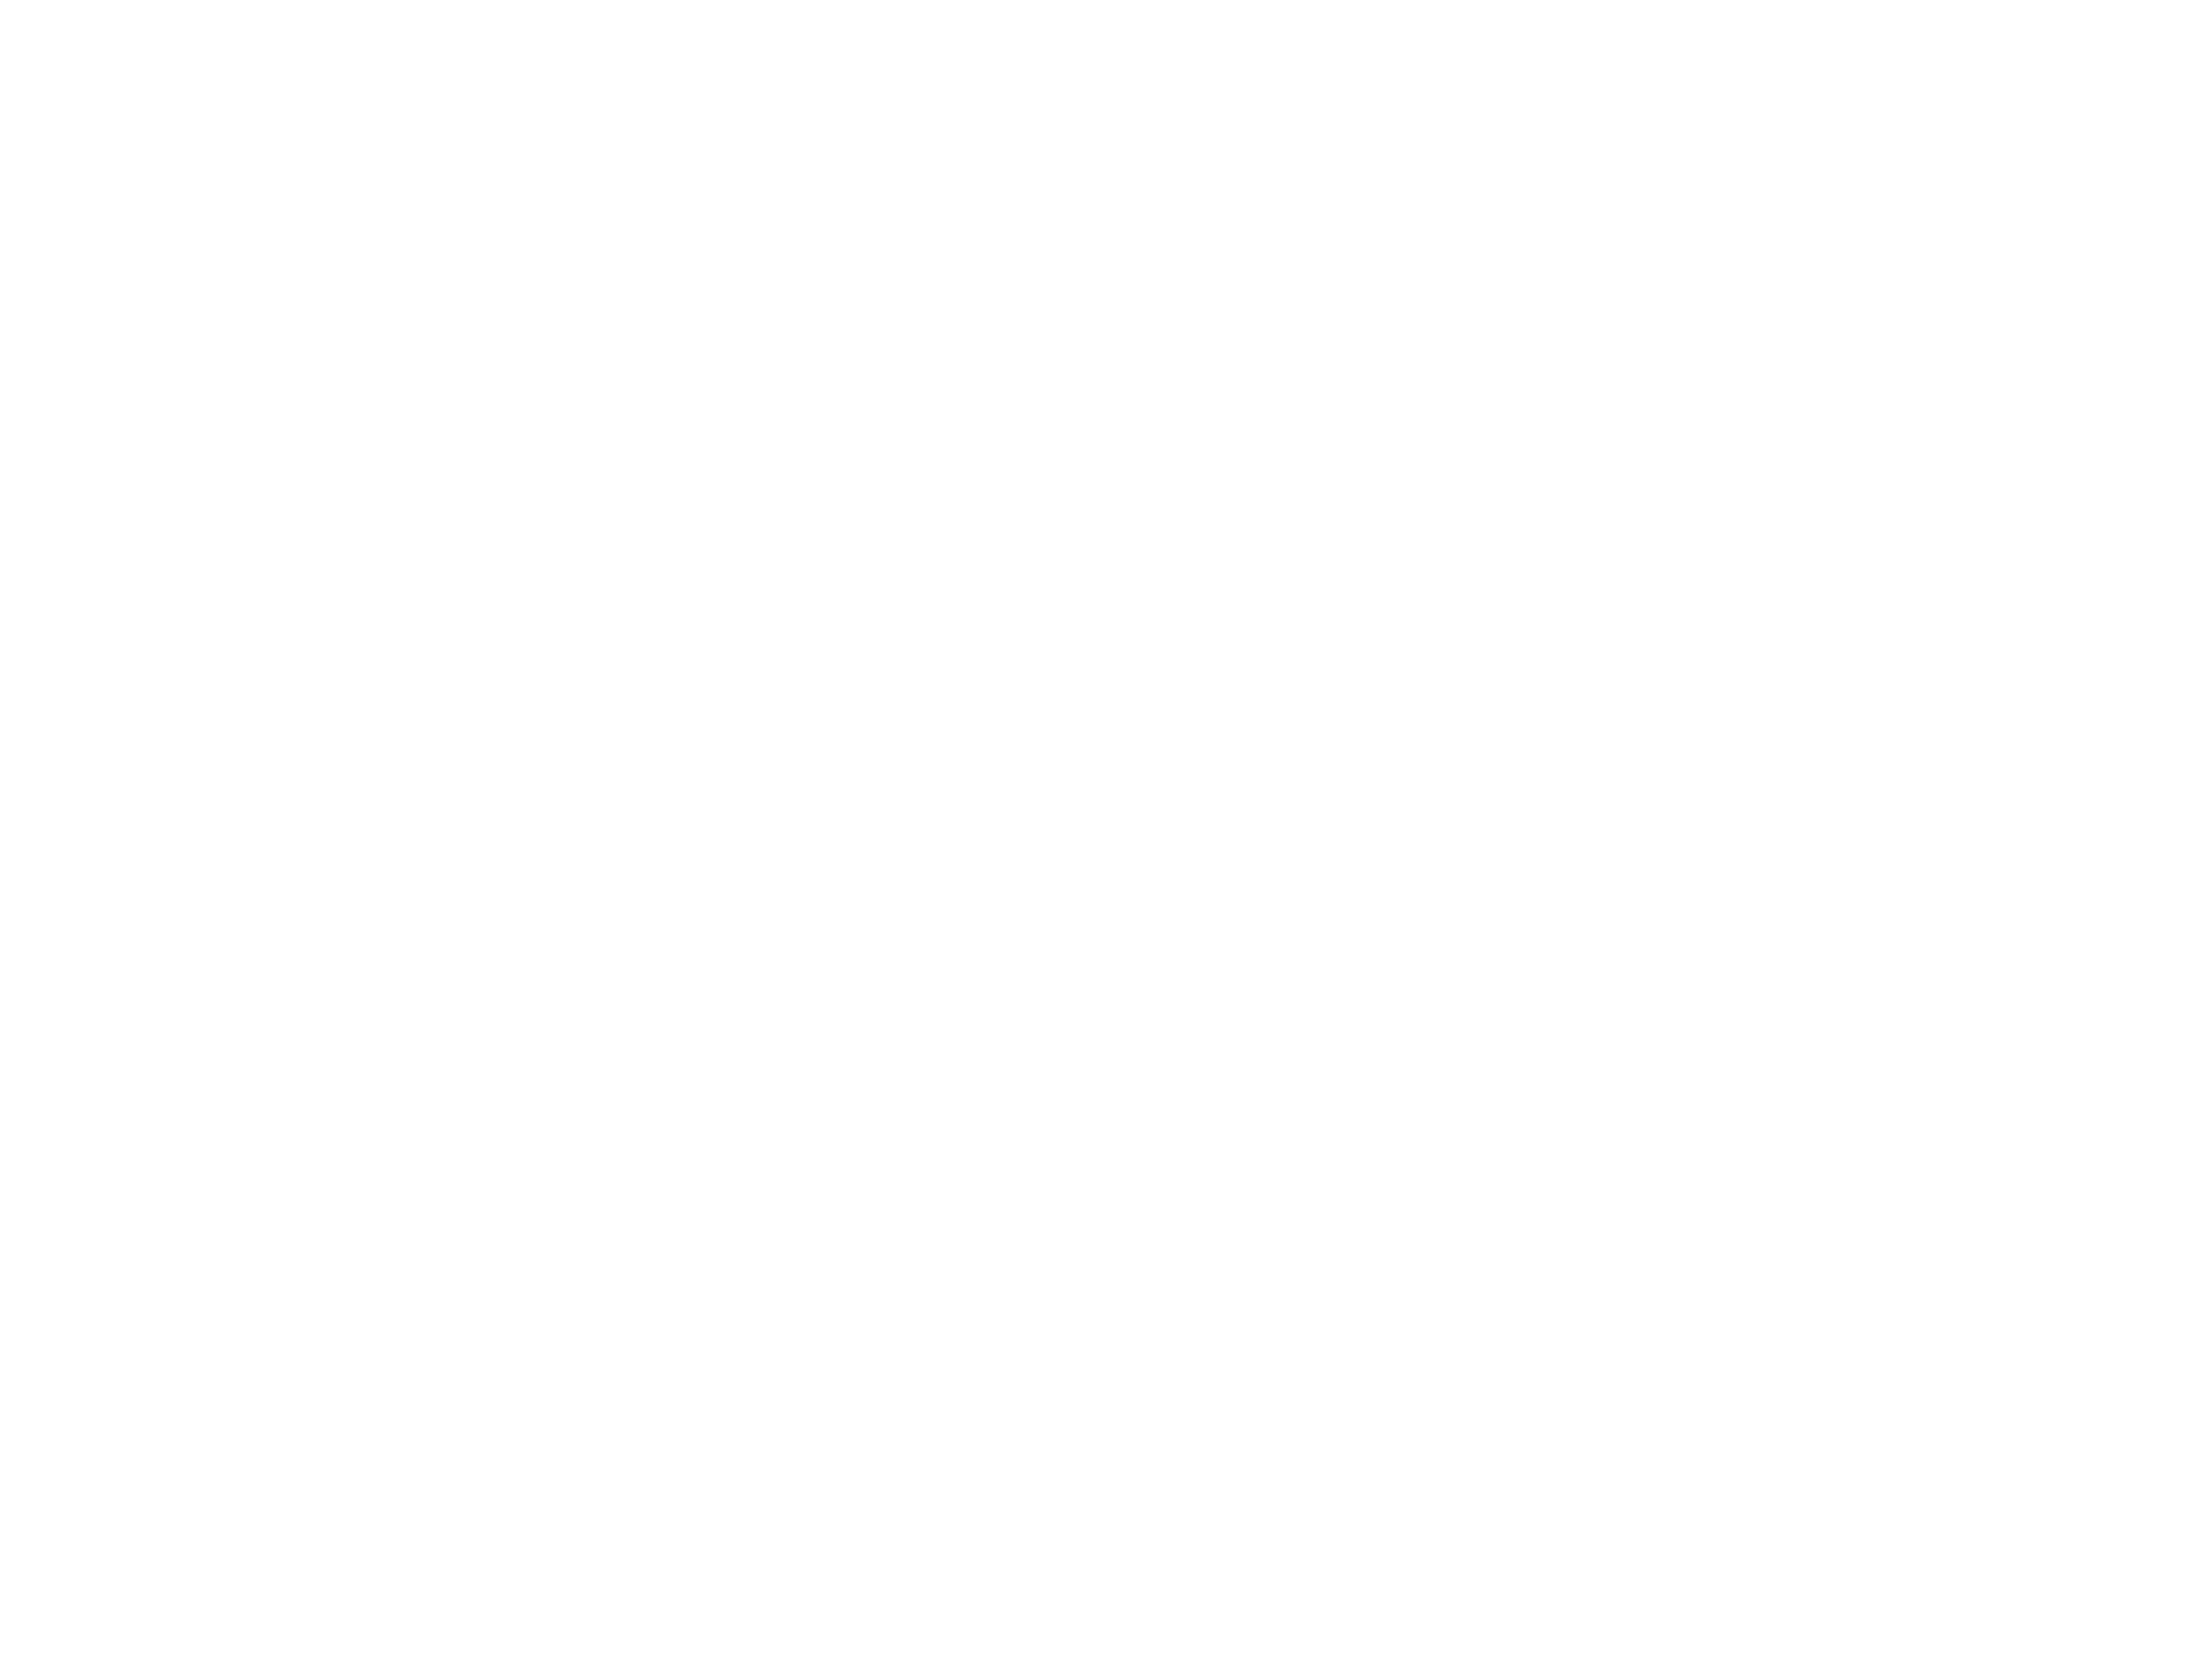 Pro Helvetia